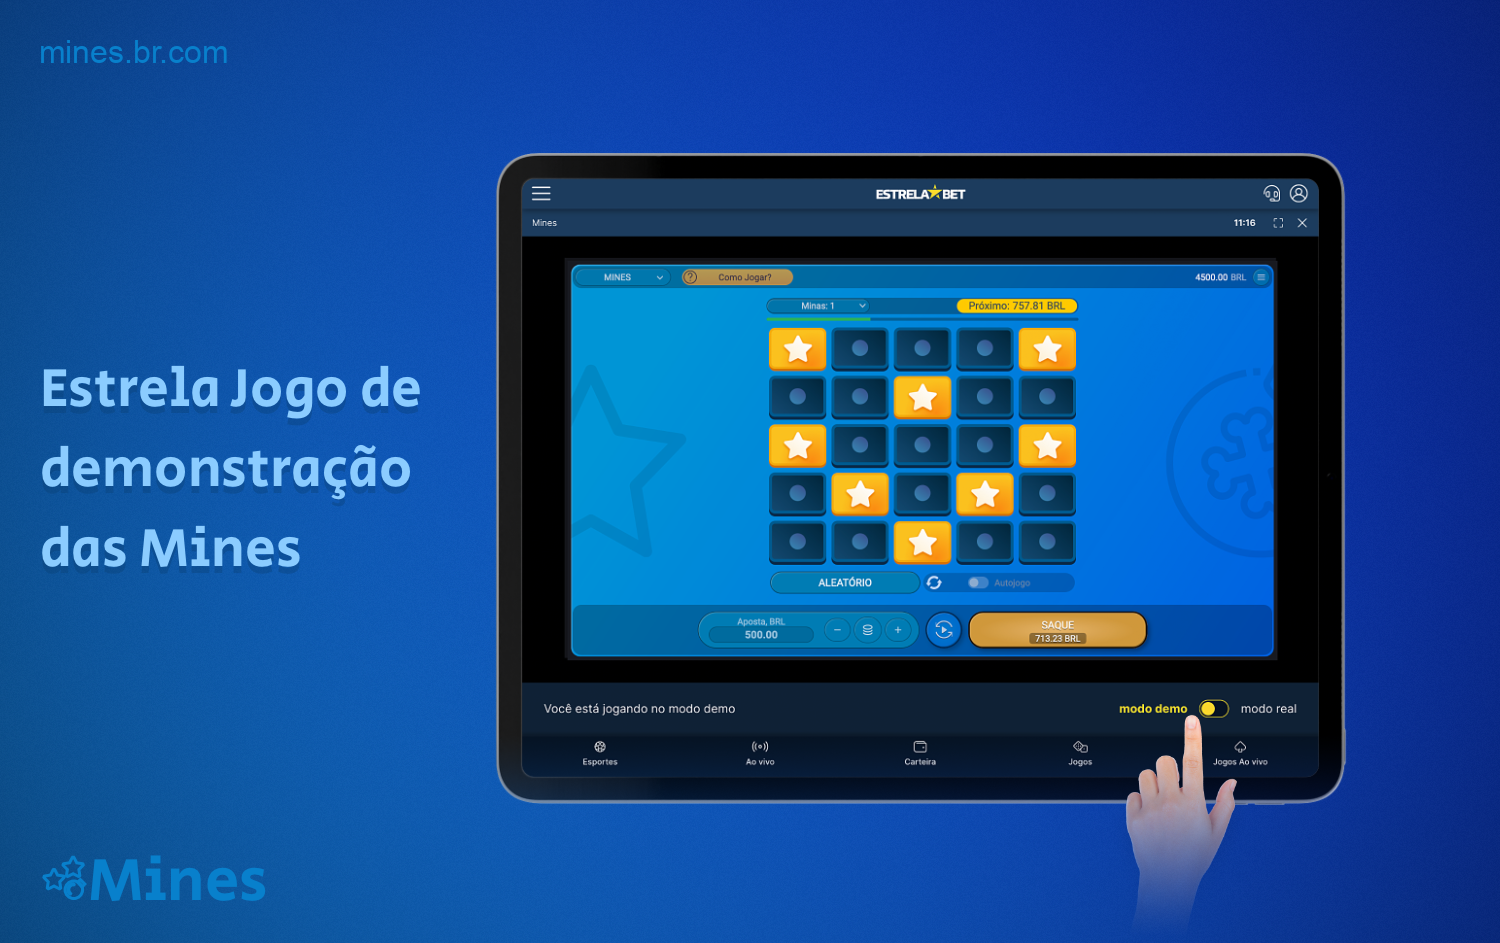 Uma versão de demonstração do jogo Mines está disponível para todos os usuários registrados do Estrela Bet no Brasil